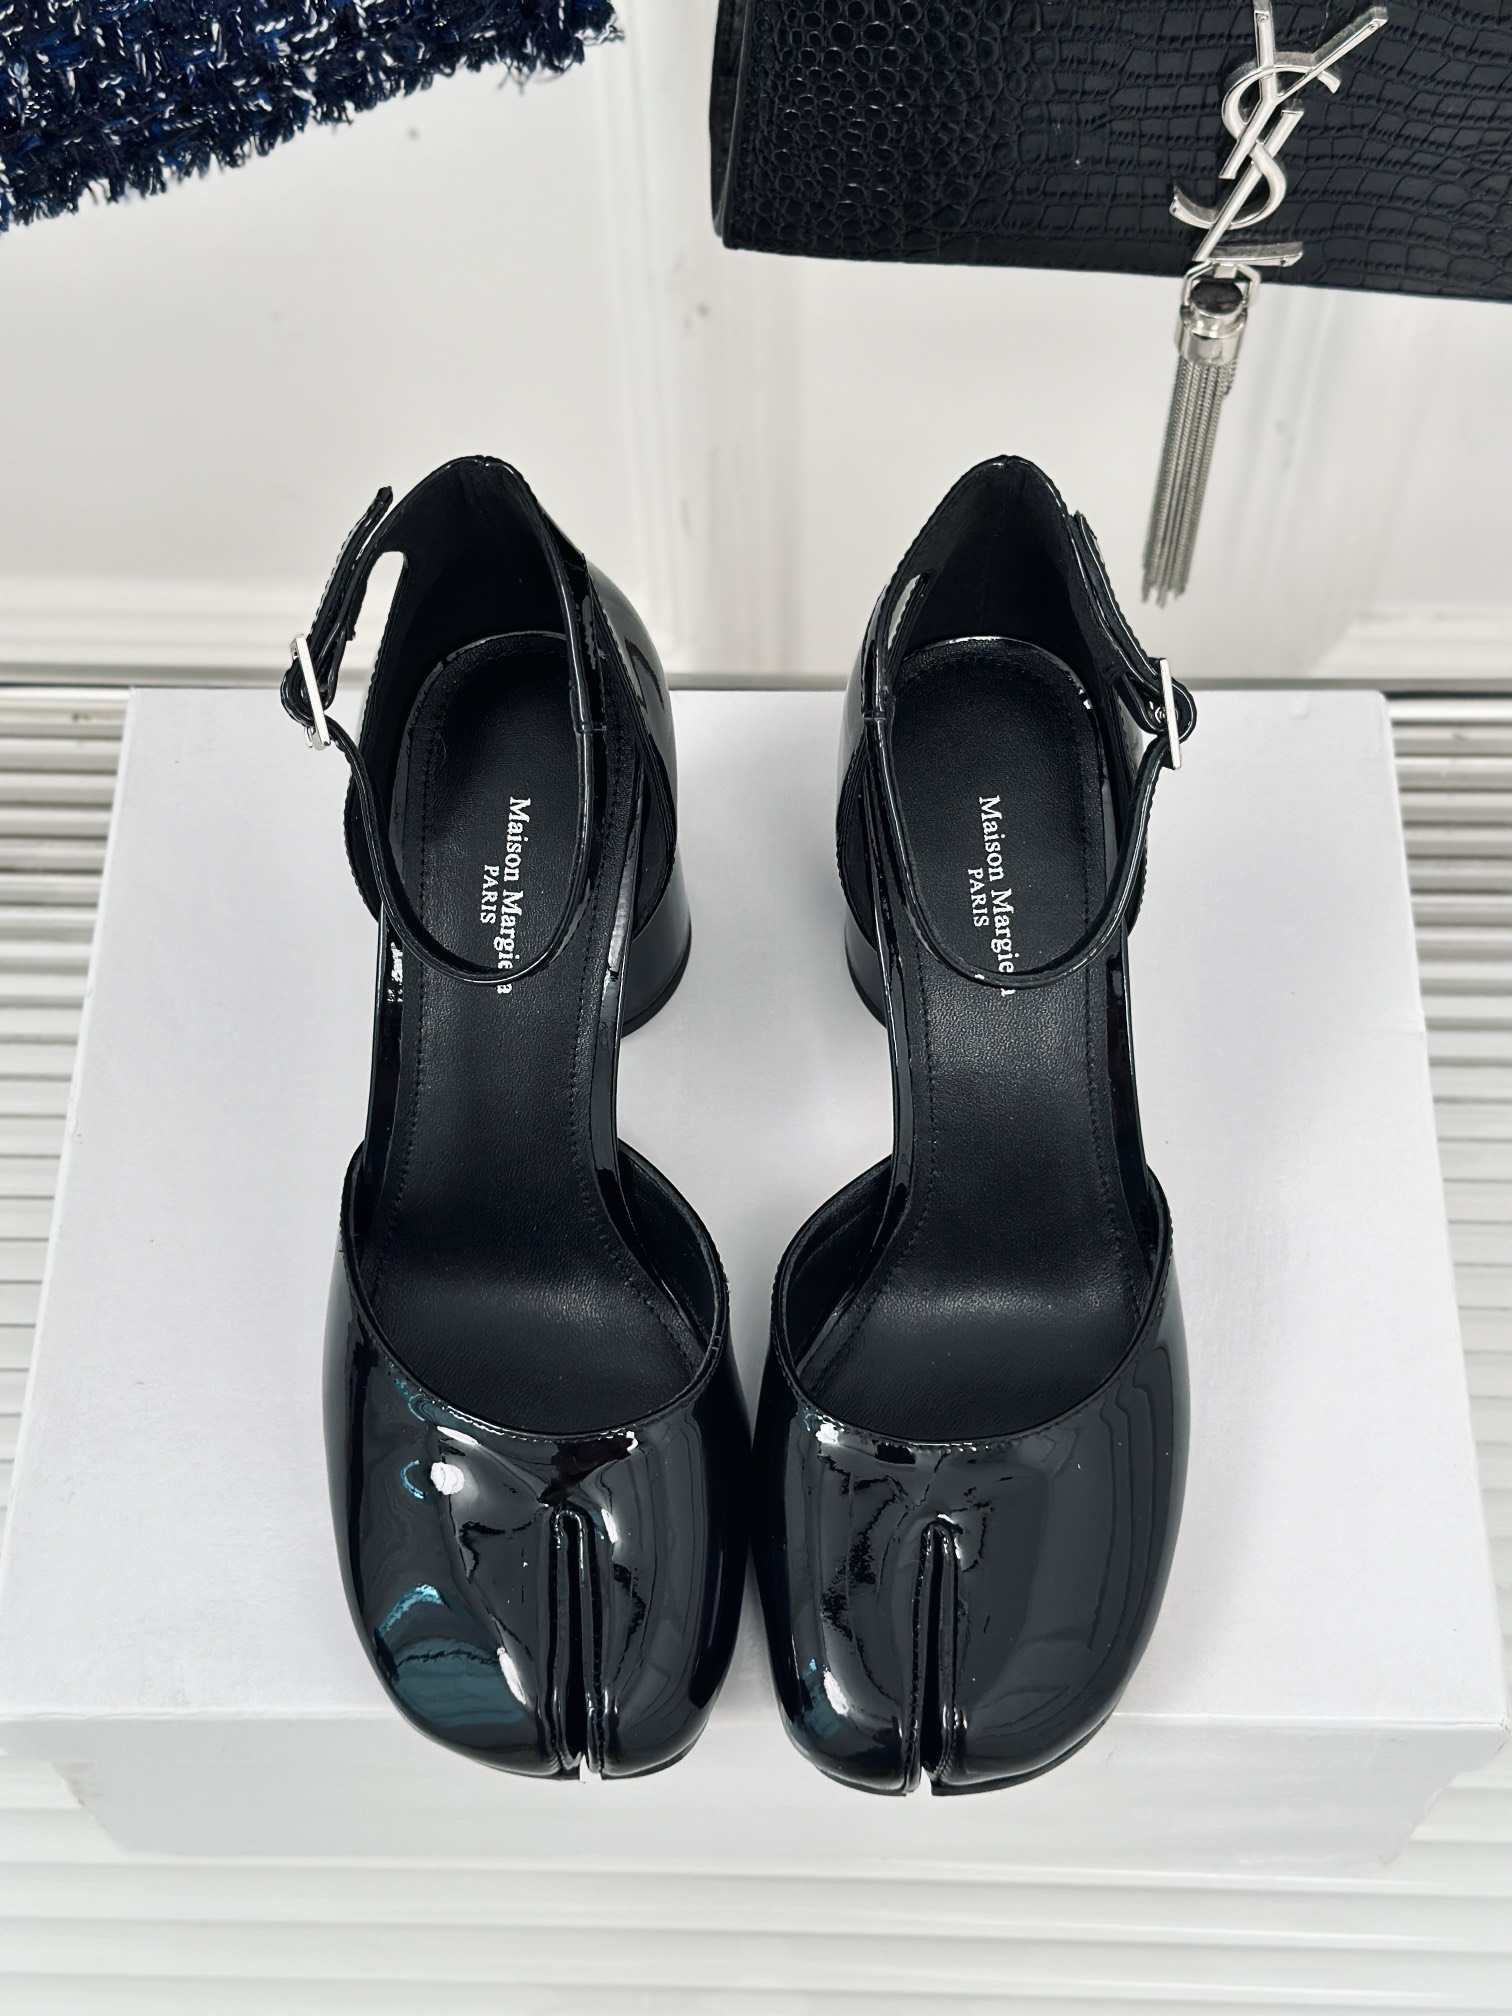 MaisonMargielaMM6马吉拉复古分趾鞋系列刻着“时髦”两字的猪蹄分趾鞋这次在原来的基础上又做